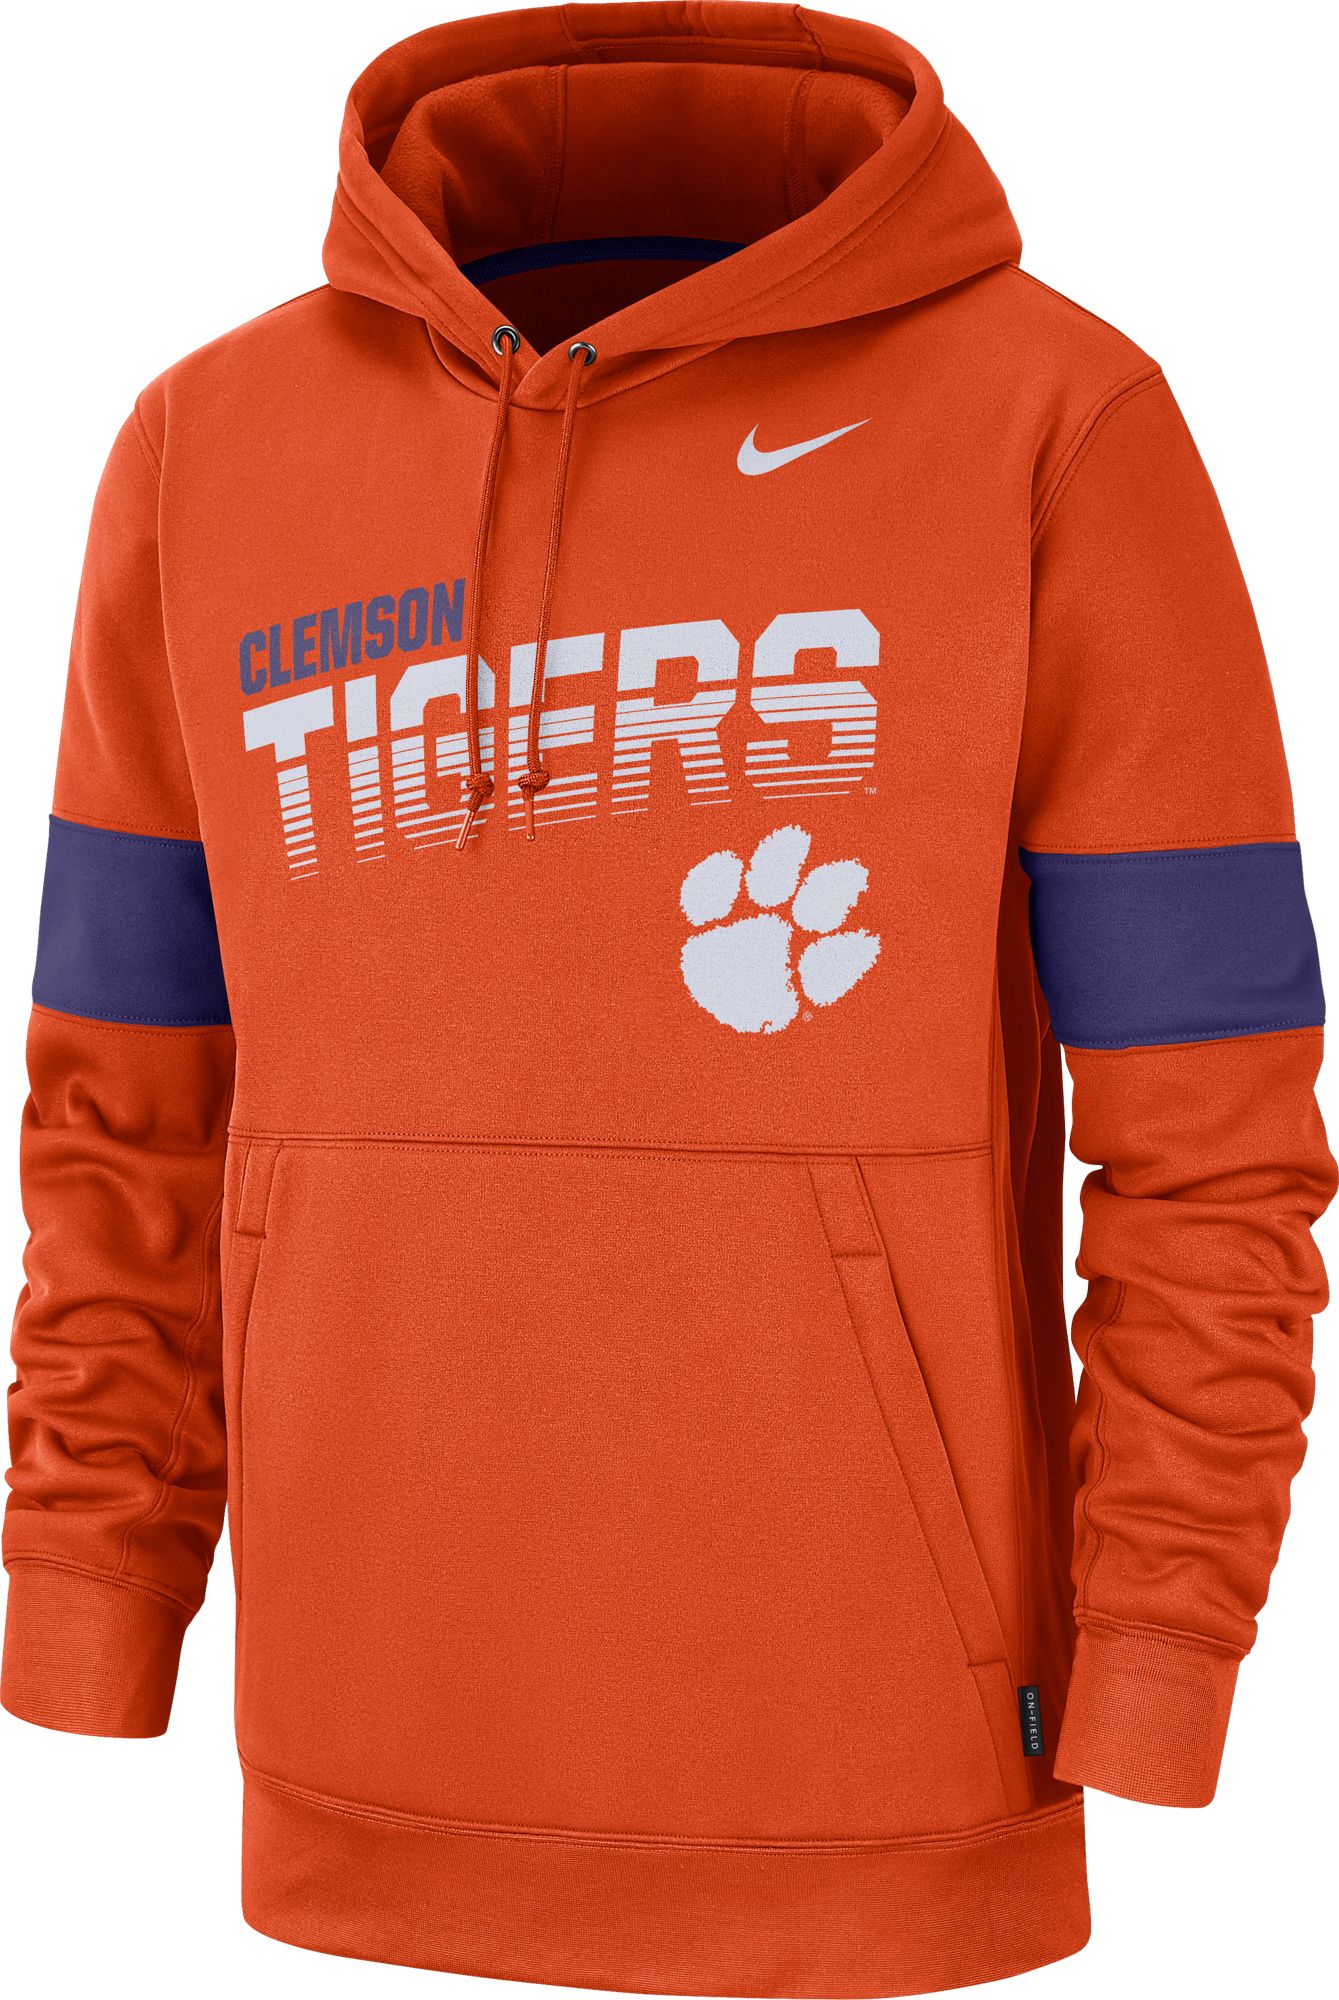 Nike Men's Clemson Tigers Orange Therma 